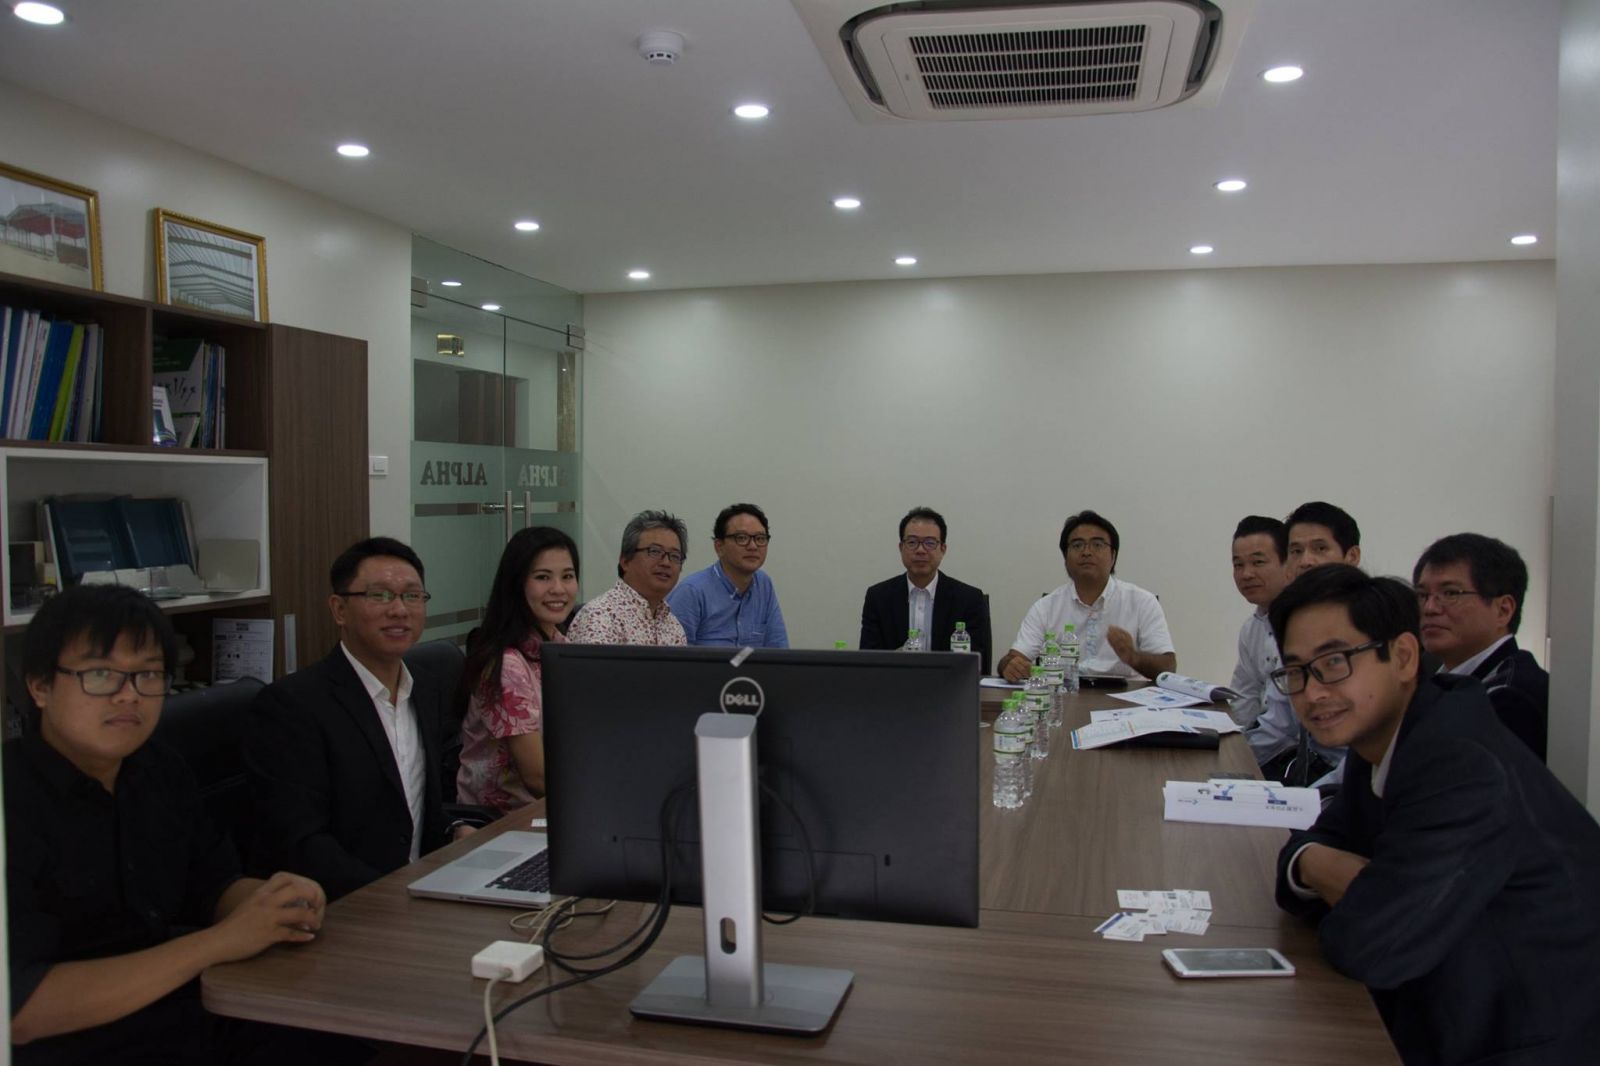 SotaTek team welcomes business delegation from Okinawa